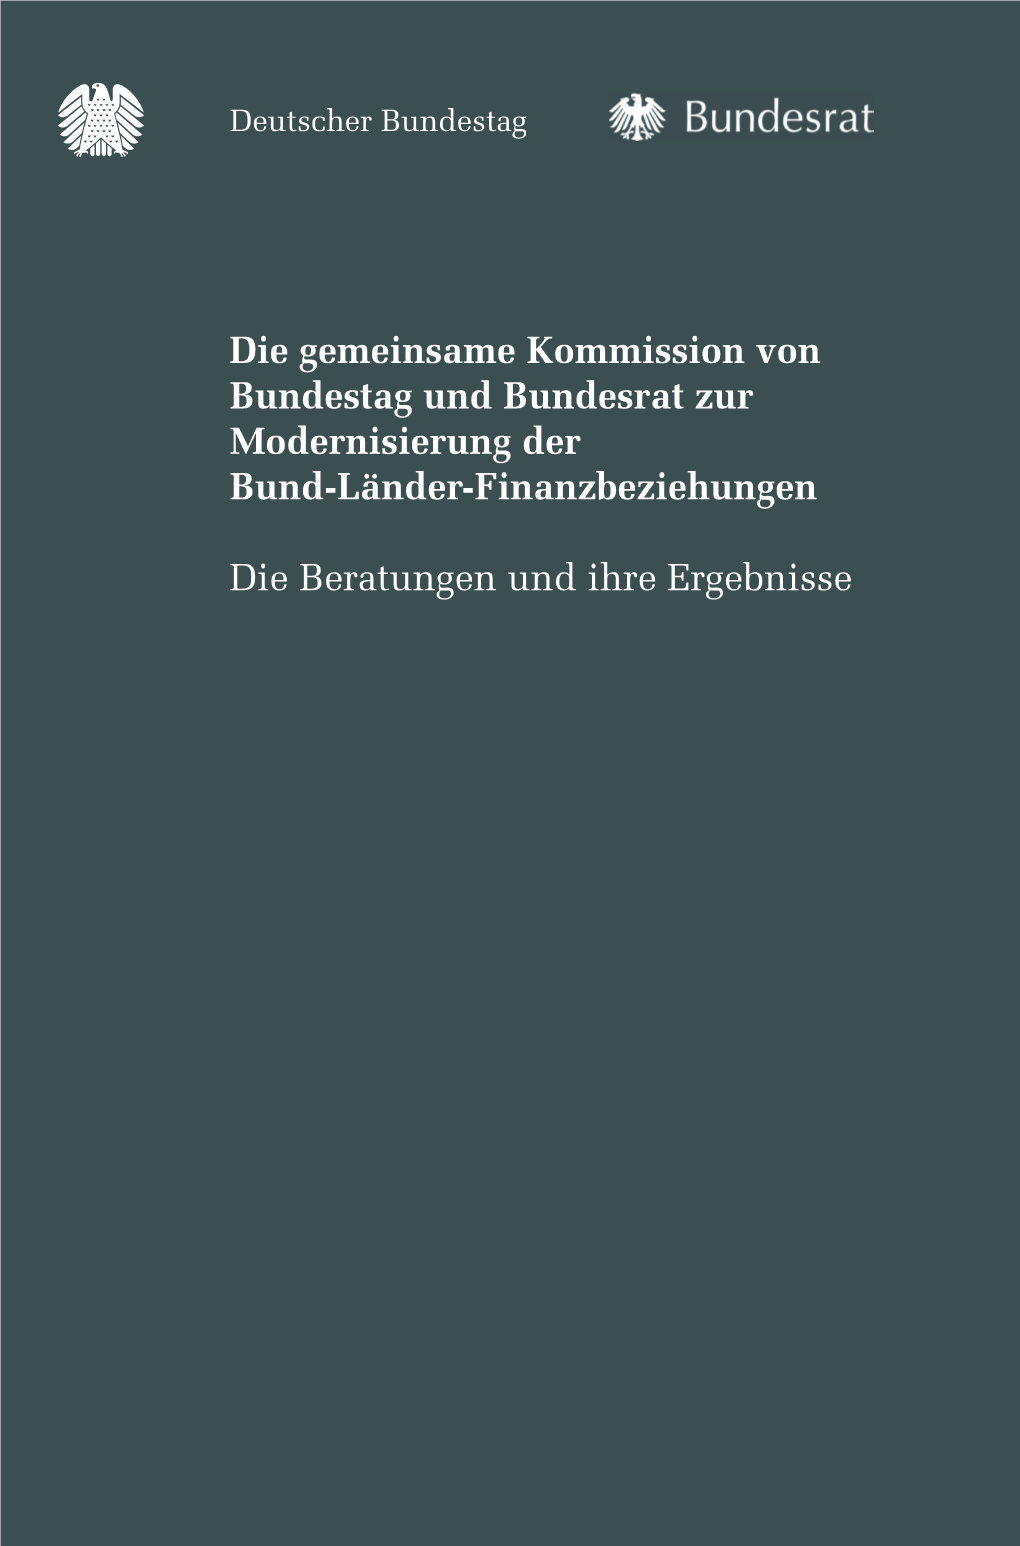 Die Gemeinsame Kommission Von Bundestag Und Bundesrat Zur Modernisierung Der Bund-Länder-Finanzbeziehungen